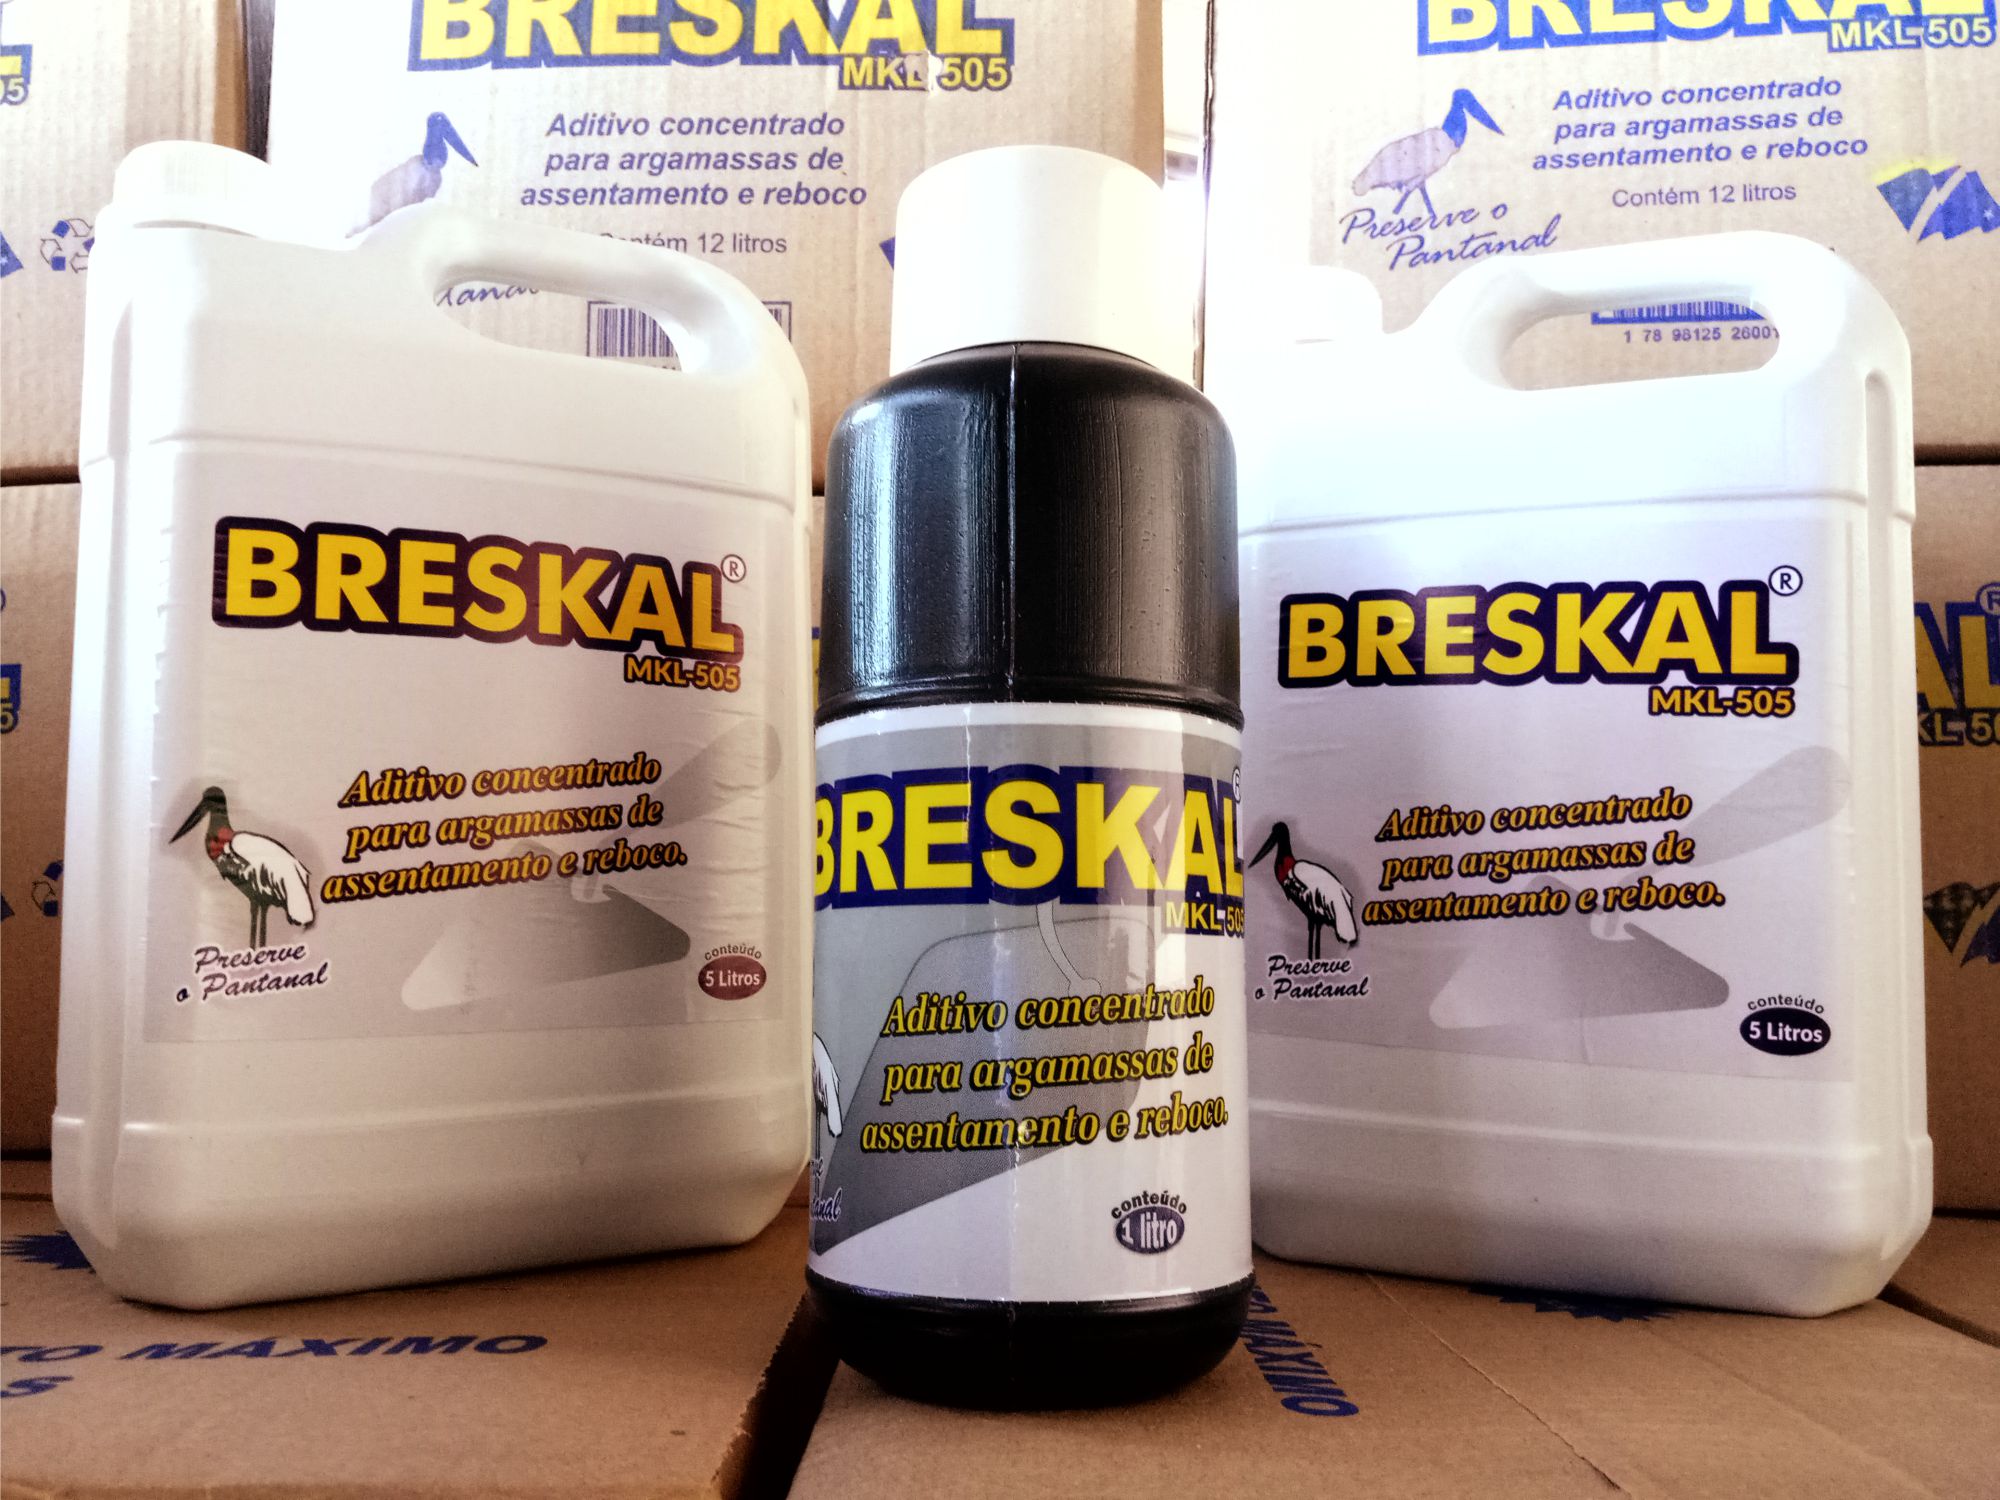 BRESKAL - aditivo concentrado para argamassas de assentamento e reboco - 1